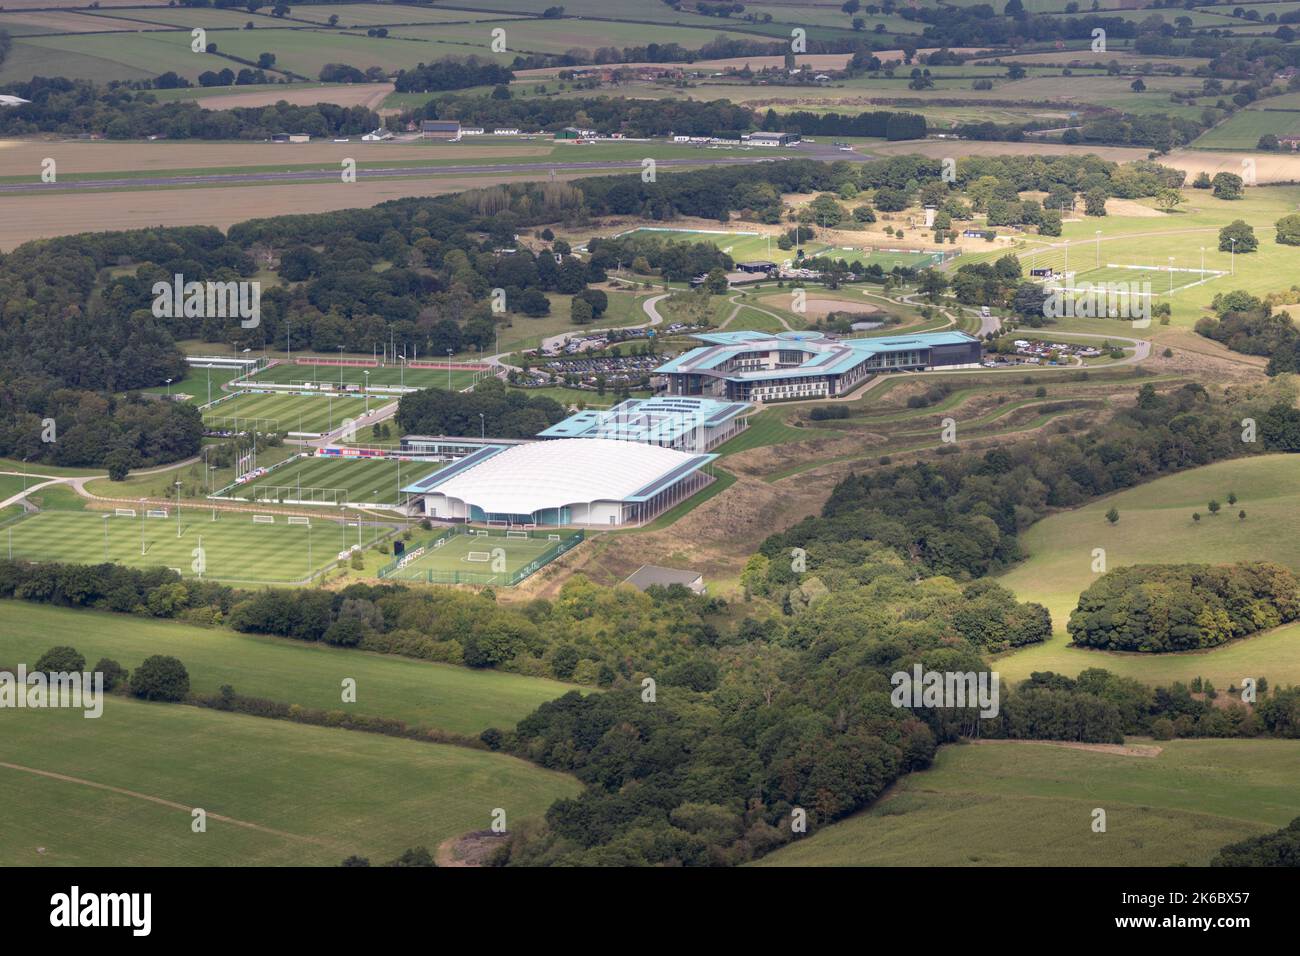 Vue aérienne du parc Saint-Georges abritant l'Association de football et terrain d'entraînement pour l'équipe de football d'Angleterre. Situé à Staffordshire 5 miles Banque D'Images